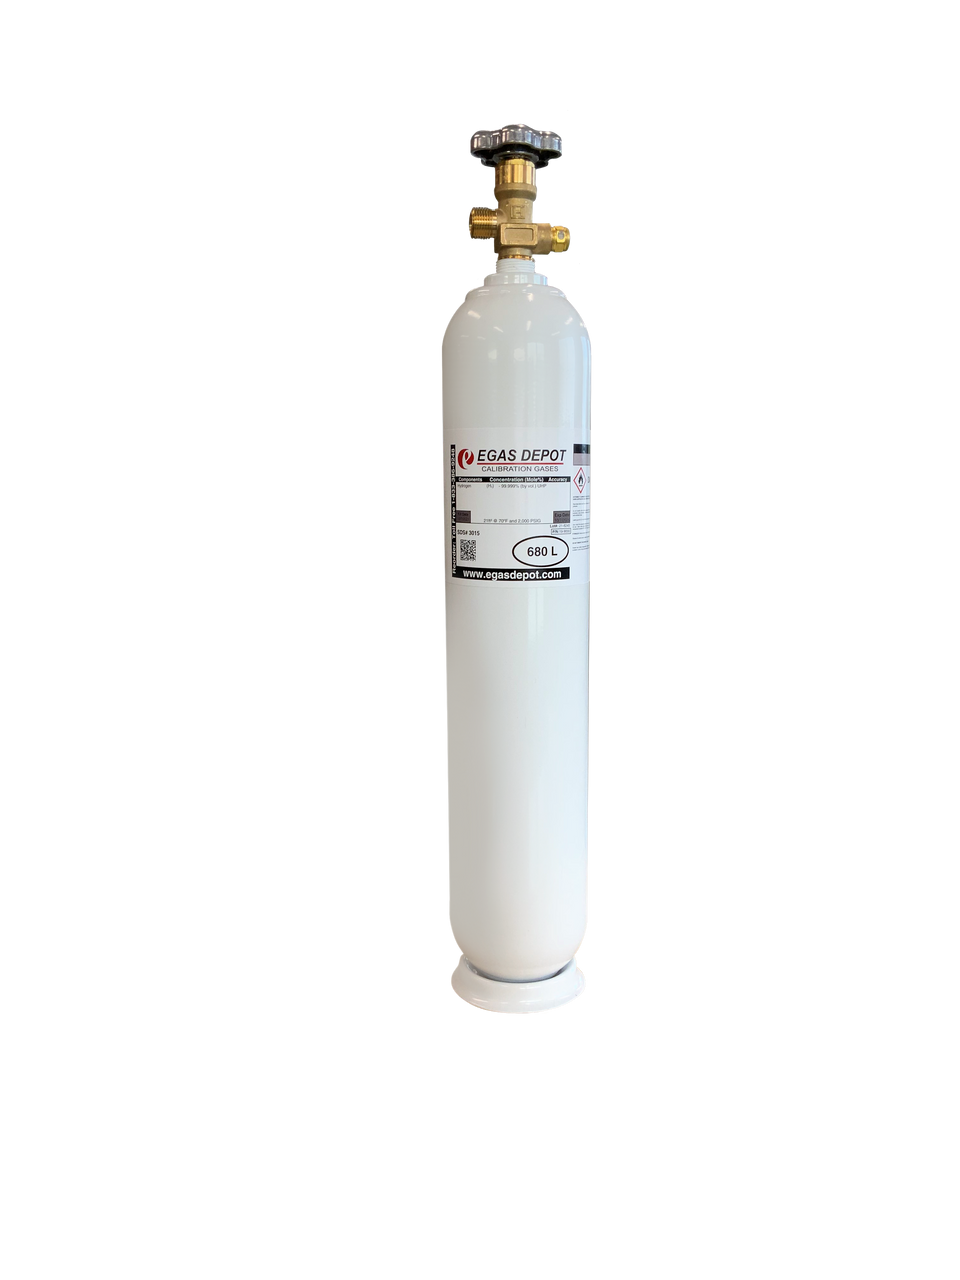 680 Liter-Carbon Dioxide 1.0%/ Nitrogen